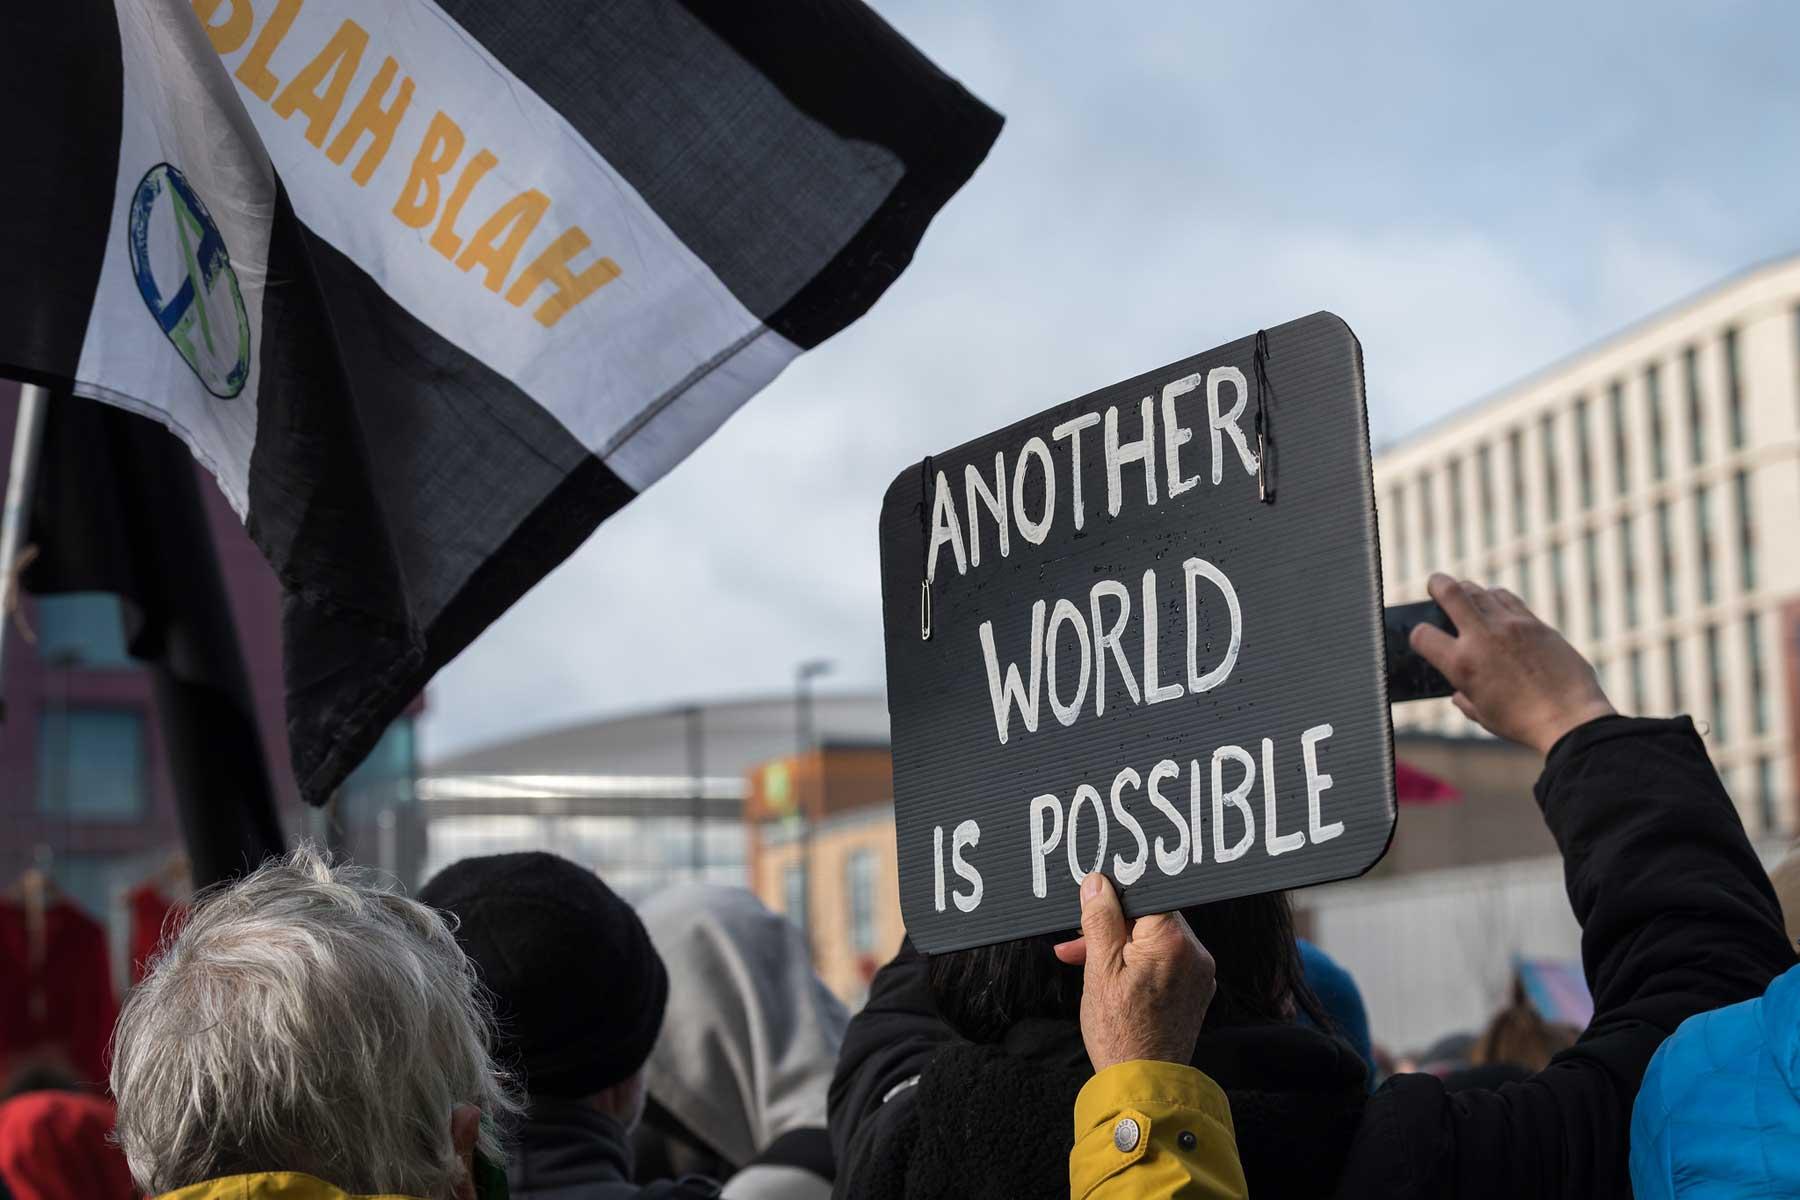 Während der UN-Klimakonferenz COP26 in Glasgow, Schottland, protestierten Menschen gegen die Untätigkeit der Regierungen bei der Eindämmung der Klimakrise. Foto: LWB/Albin Hillert